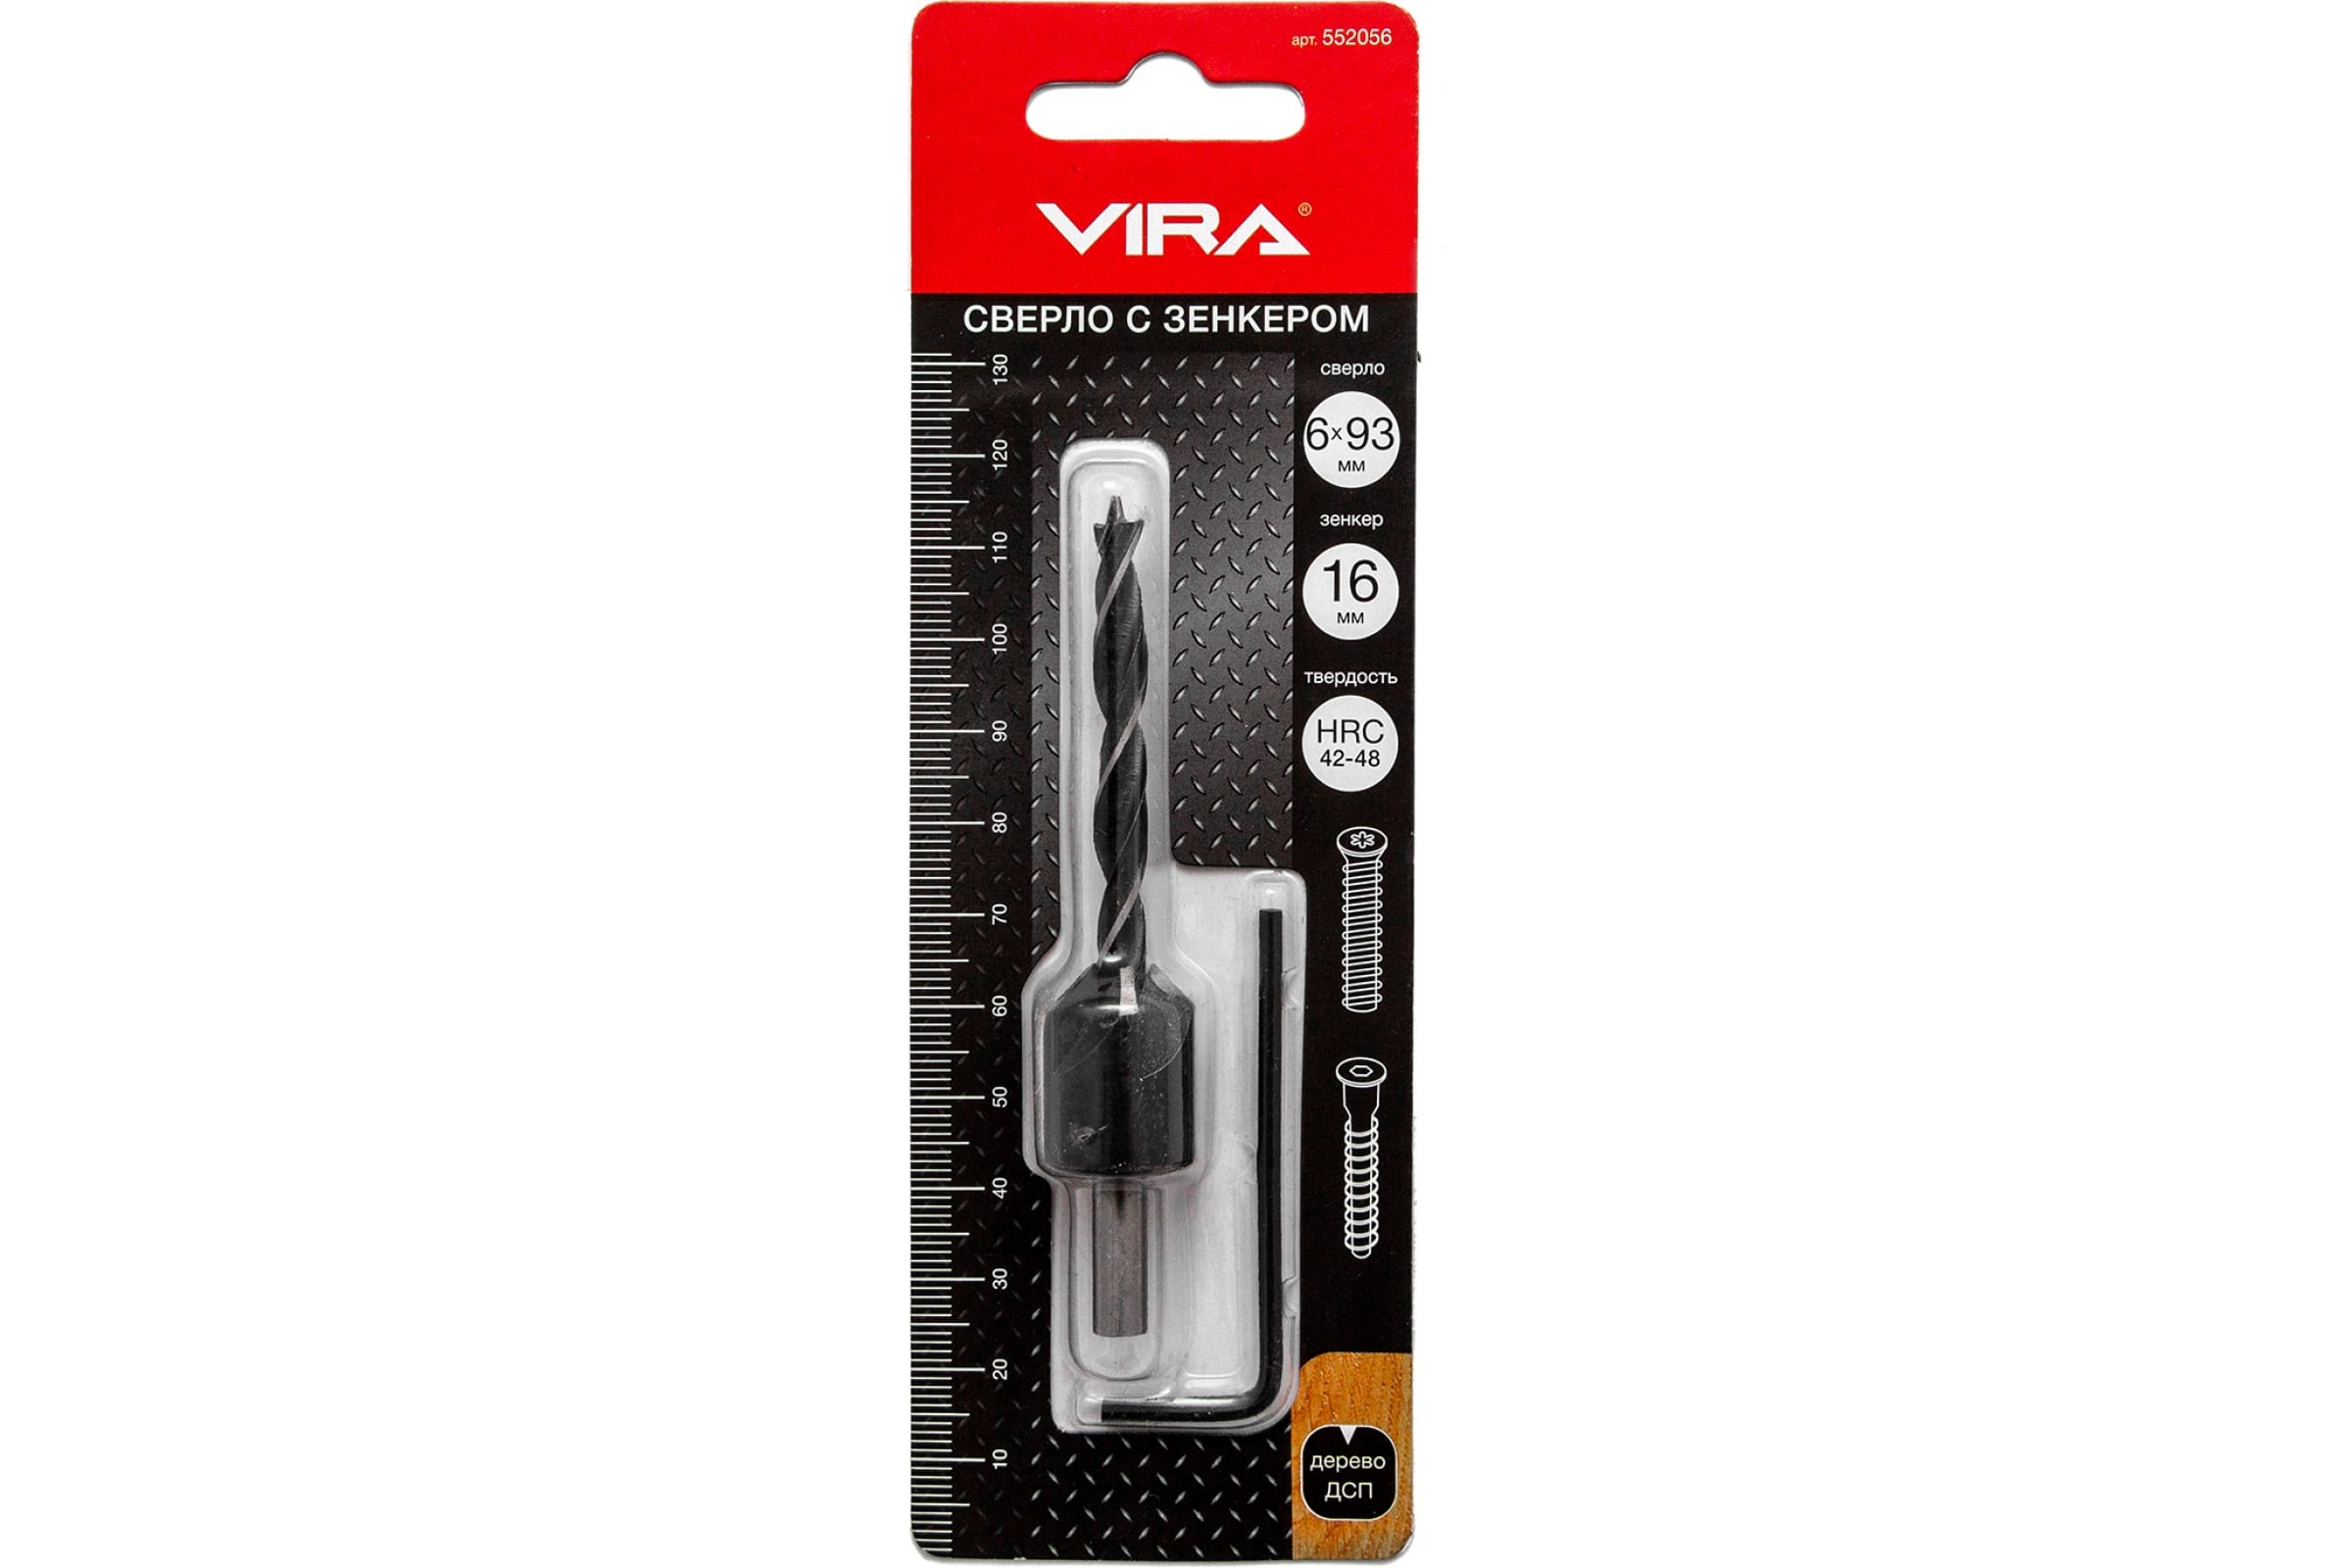 VIRA Сверло с зенкером 6 мм 552056 щетка для ушм vira